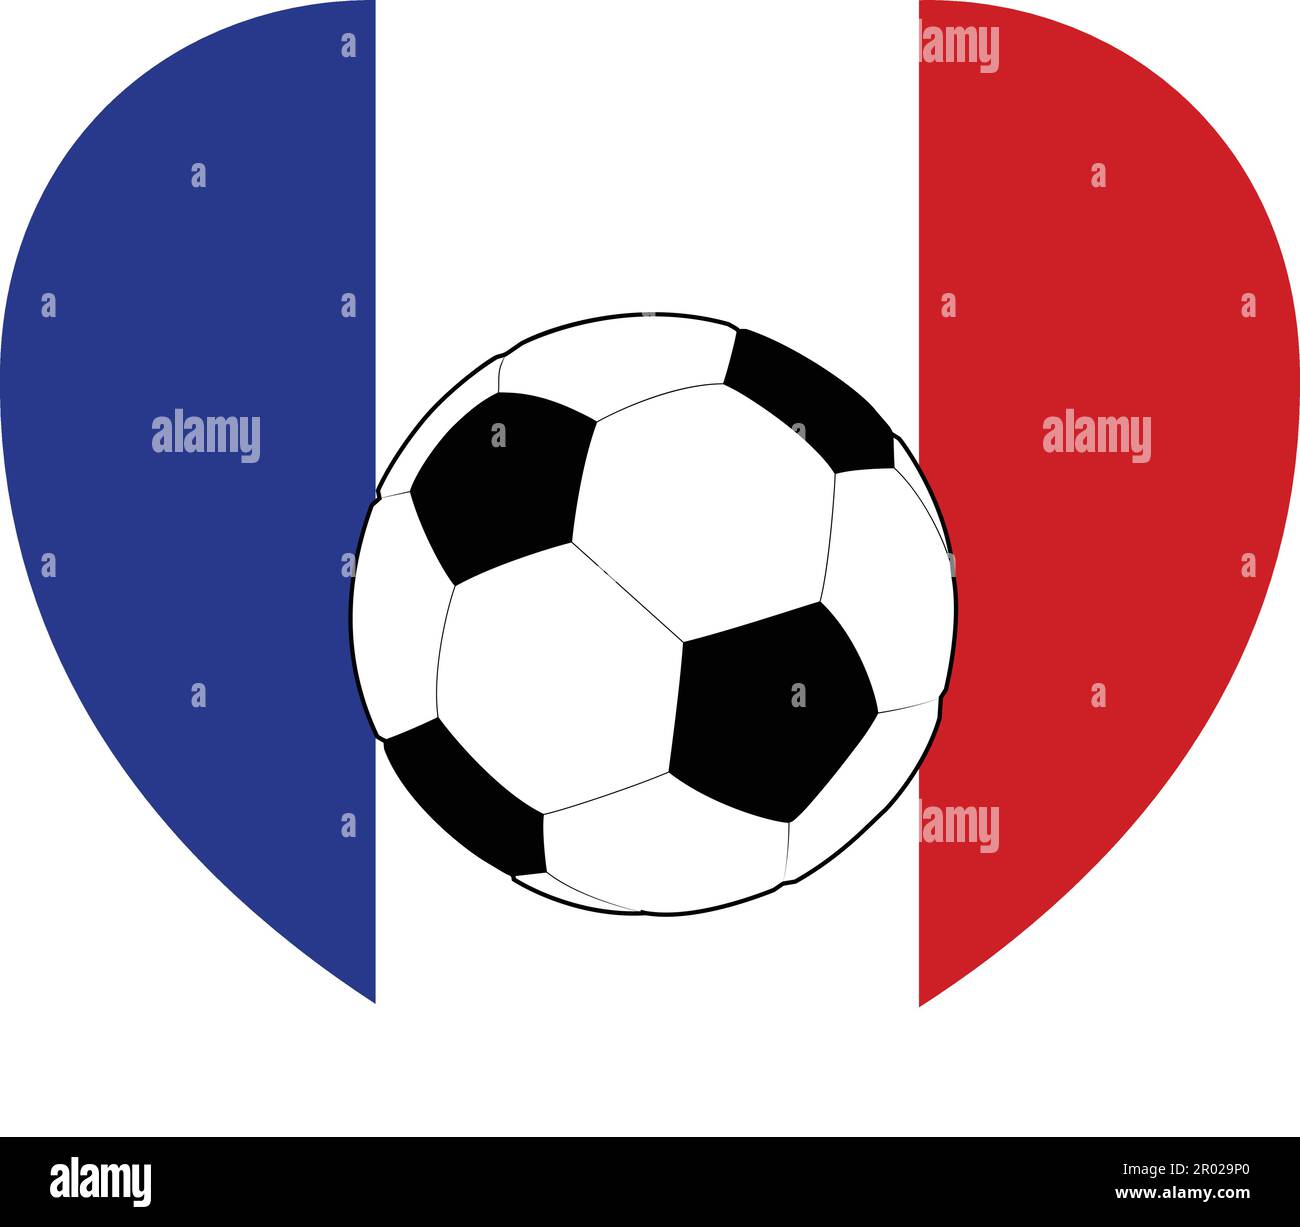 France drapeau français football coeur Illustration de Vecteur